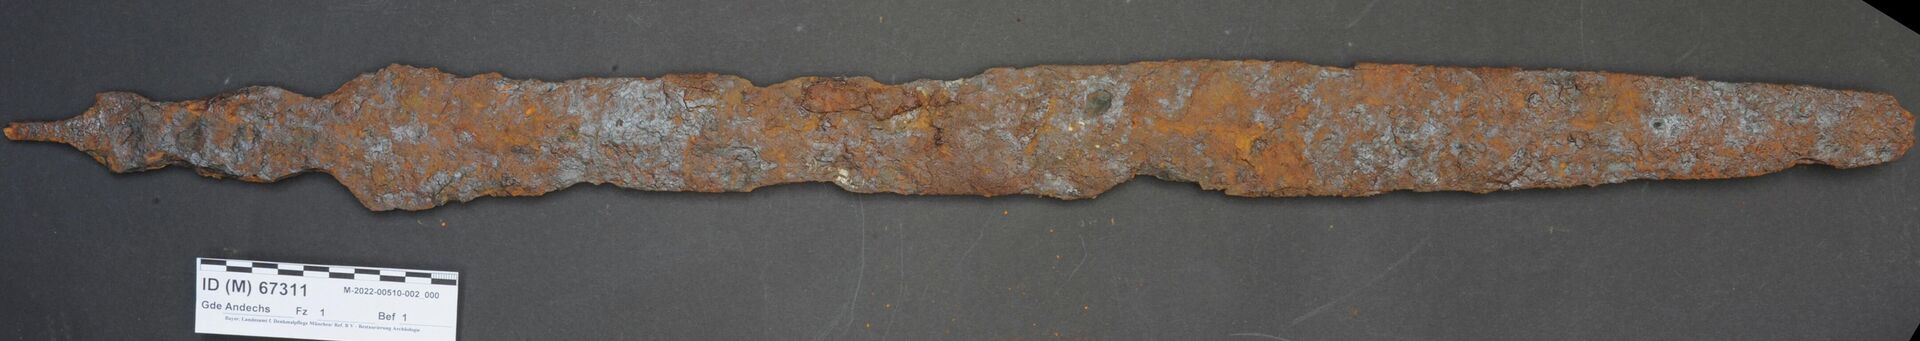 Espada do início da Idade do Ferro descoberta em Andechs, no sul da Alemanha - Sputnik Brasil, 1920, 06.06.2022